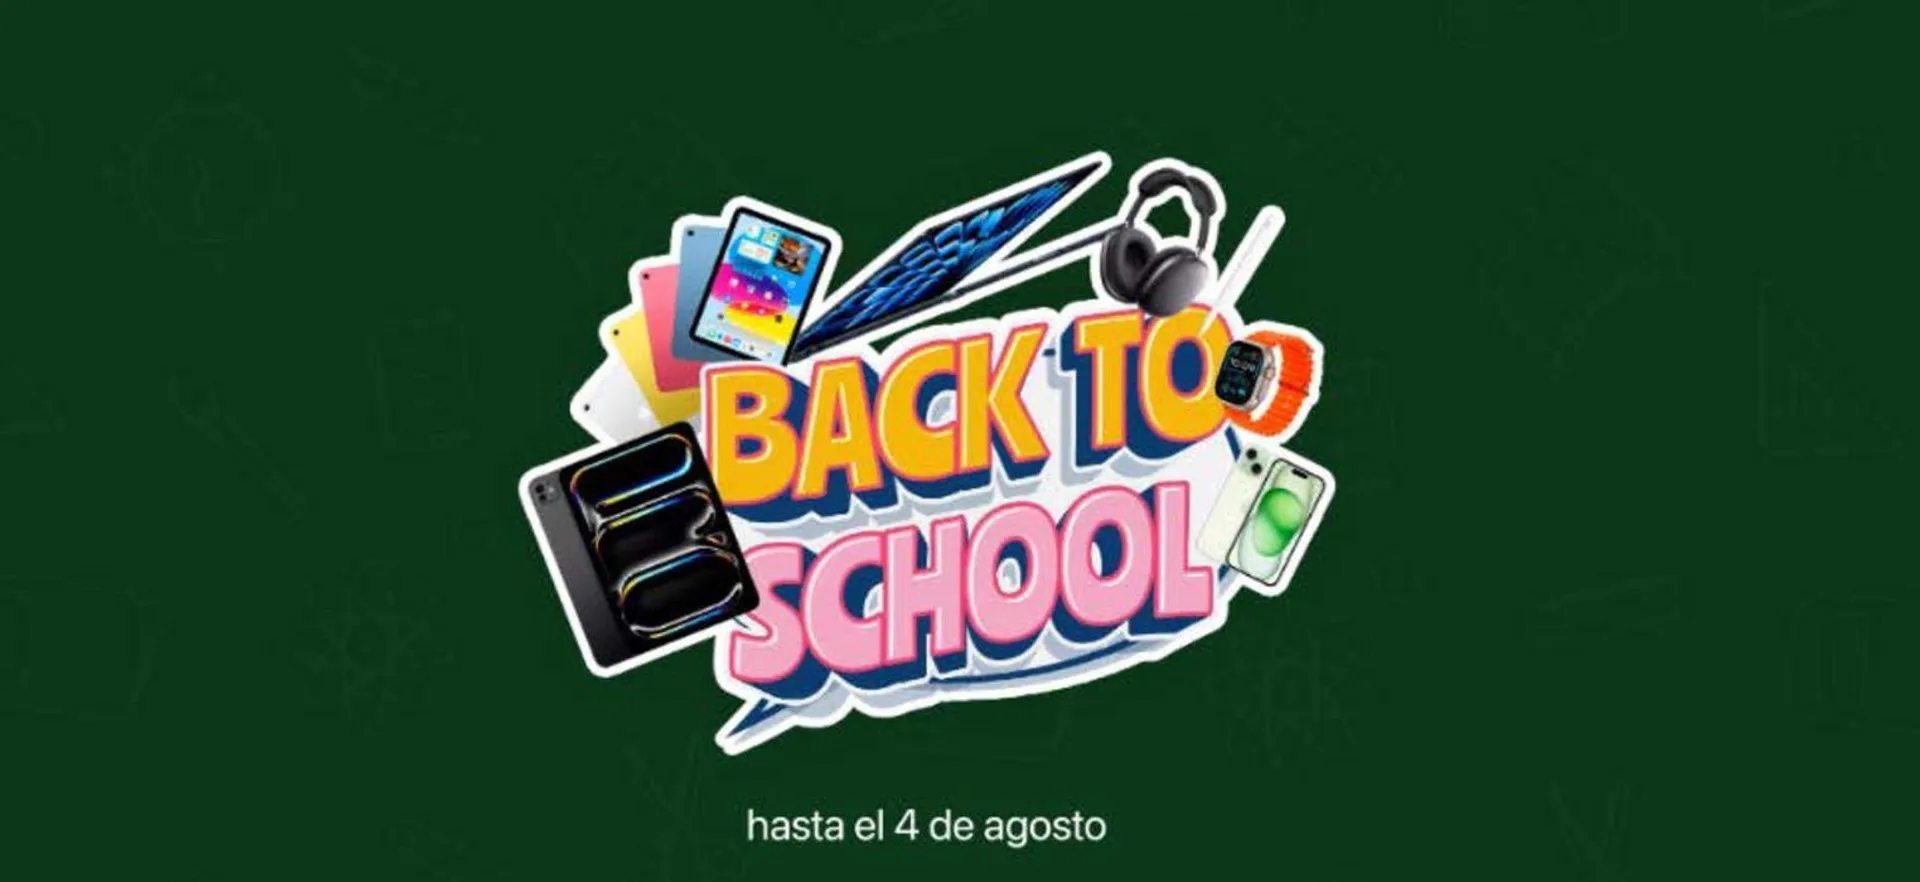 Back to school! Hasta el 4 de agosto - 1